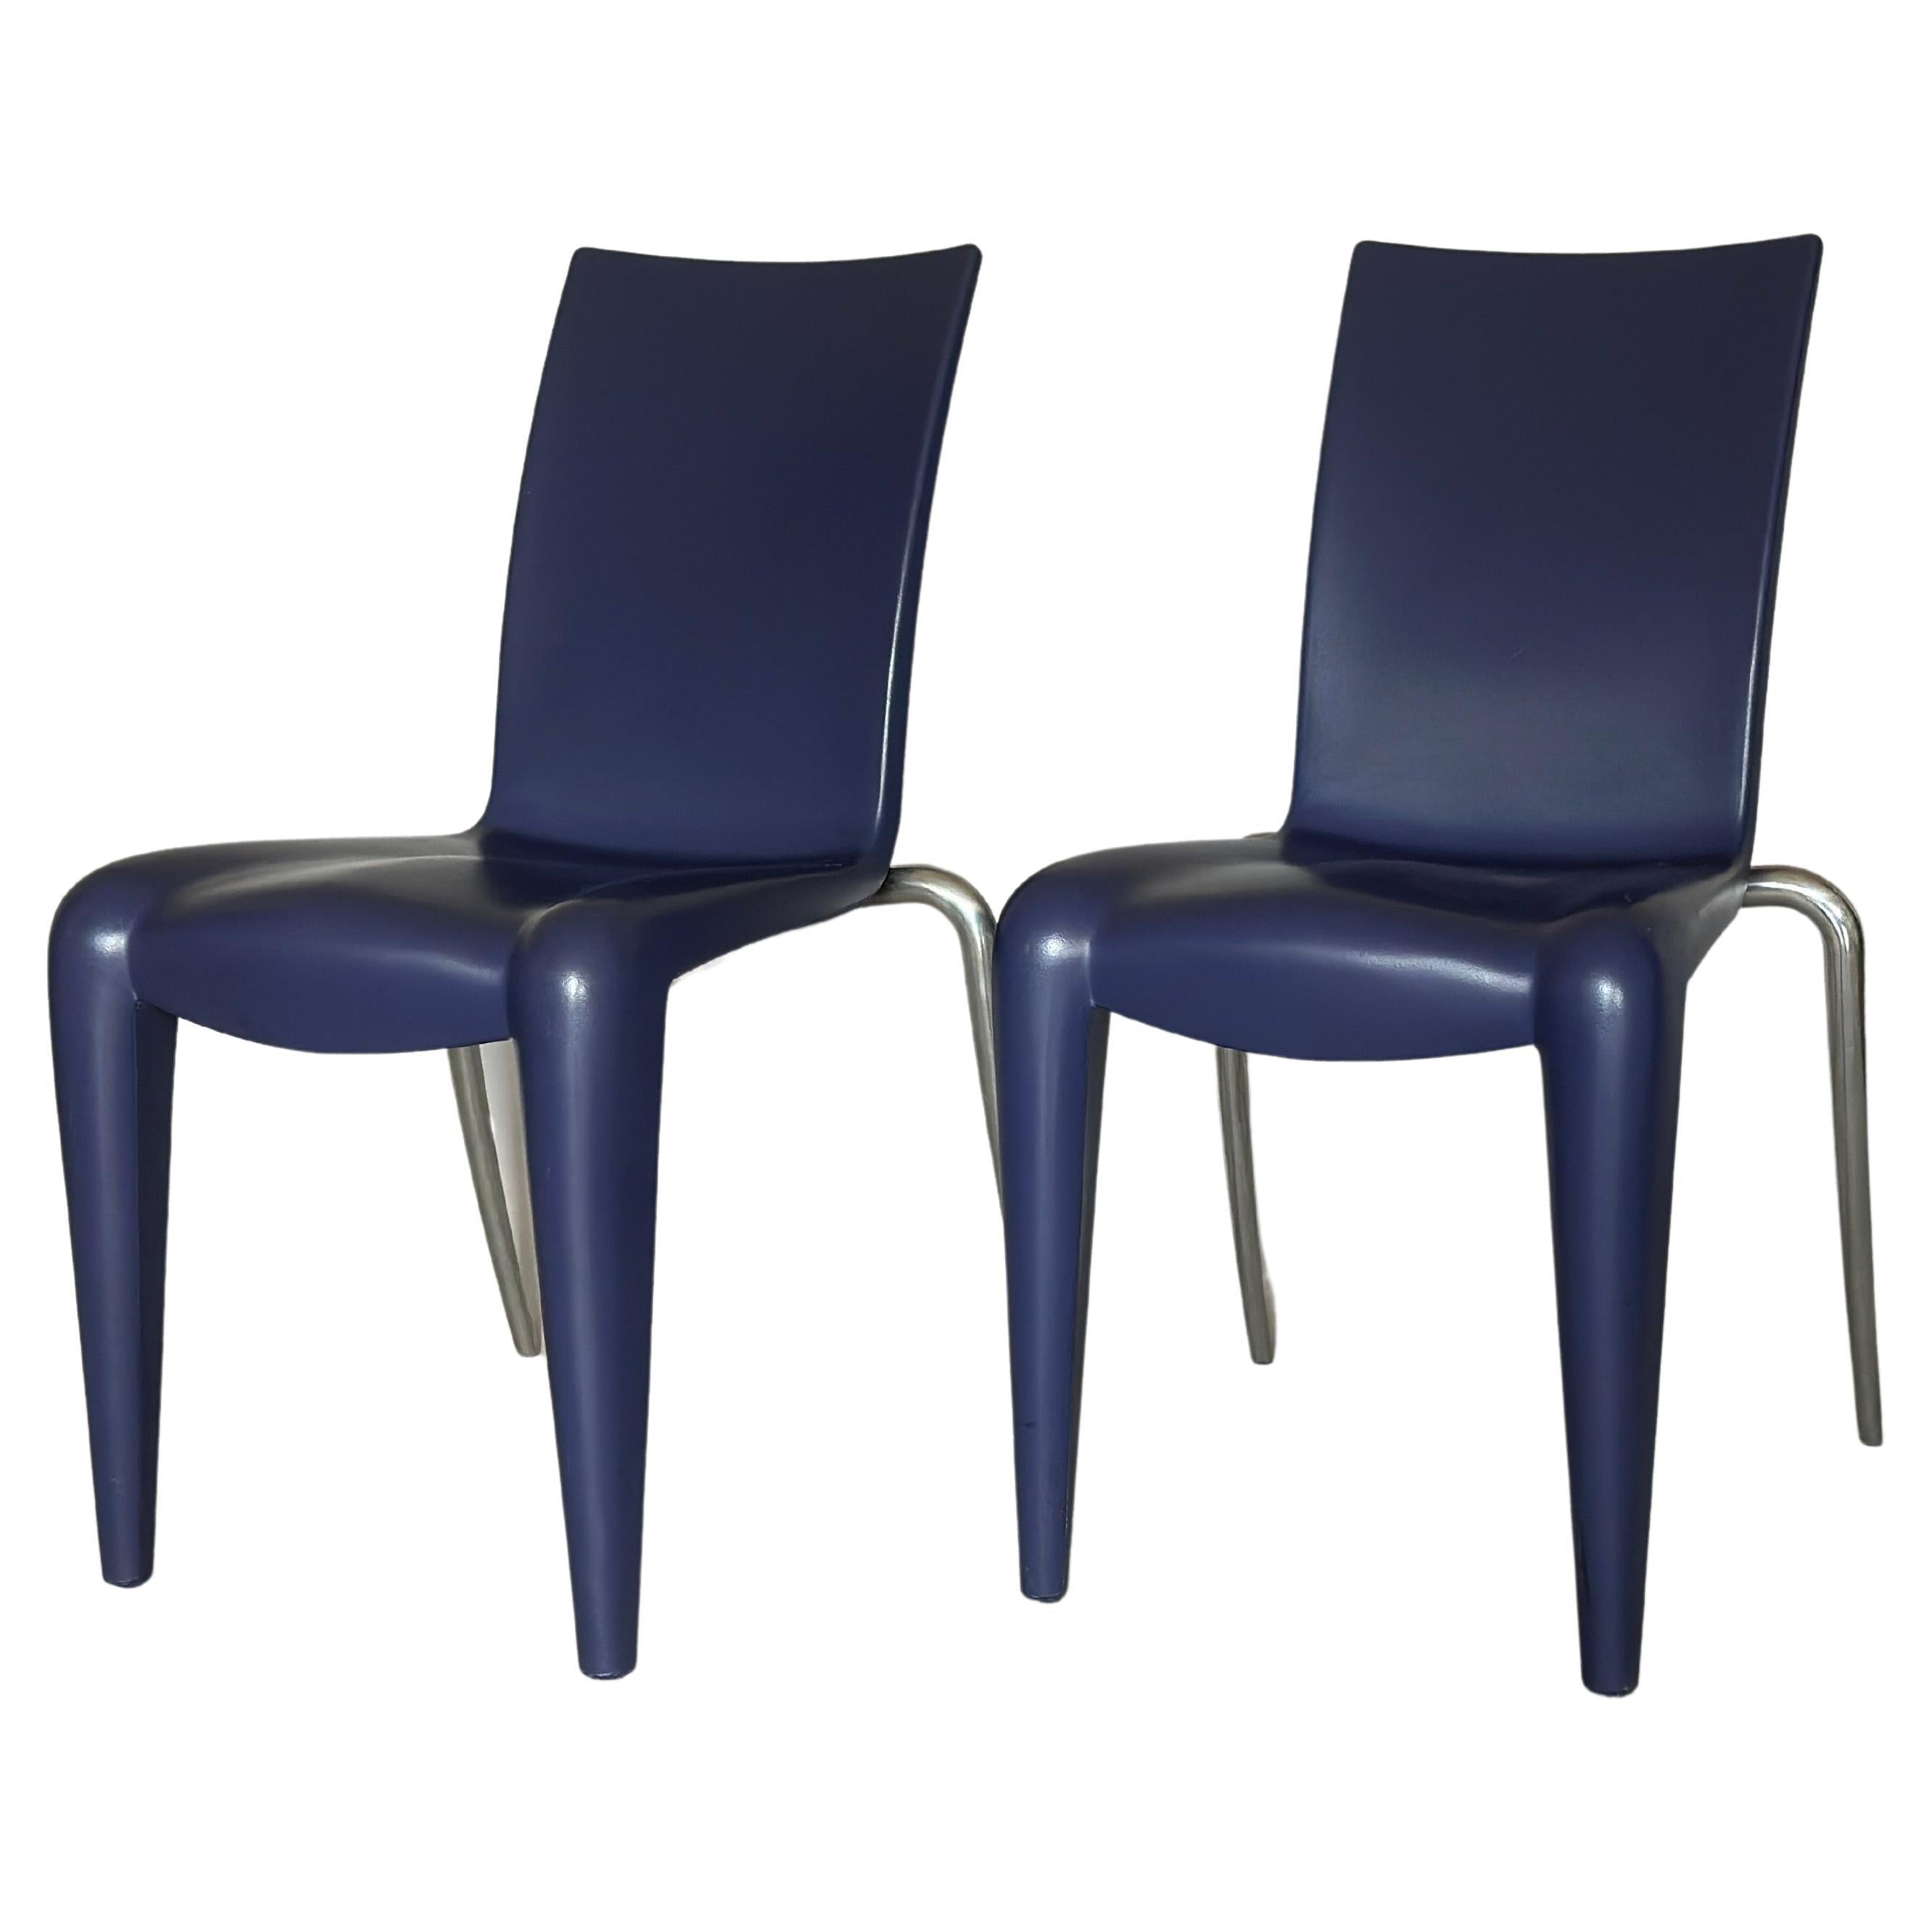 Chaise bleue Louis 20 par Philipe Starck pour Vitra, vers 1990